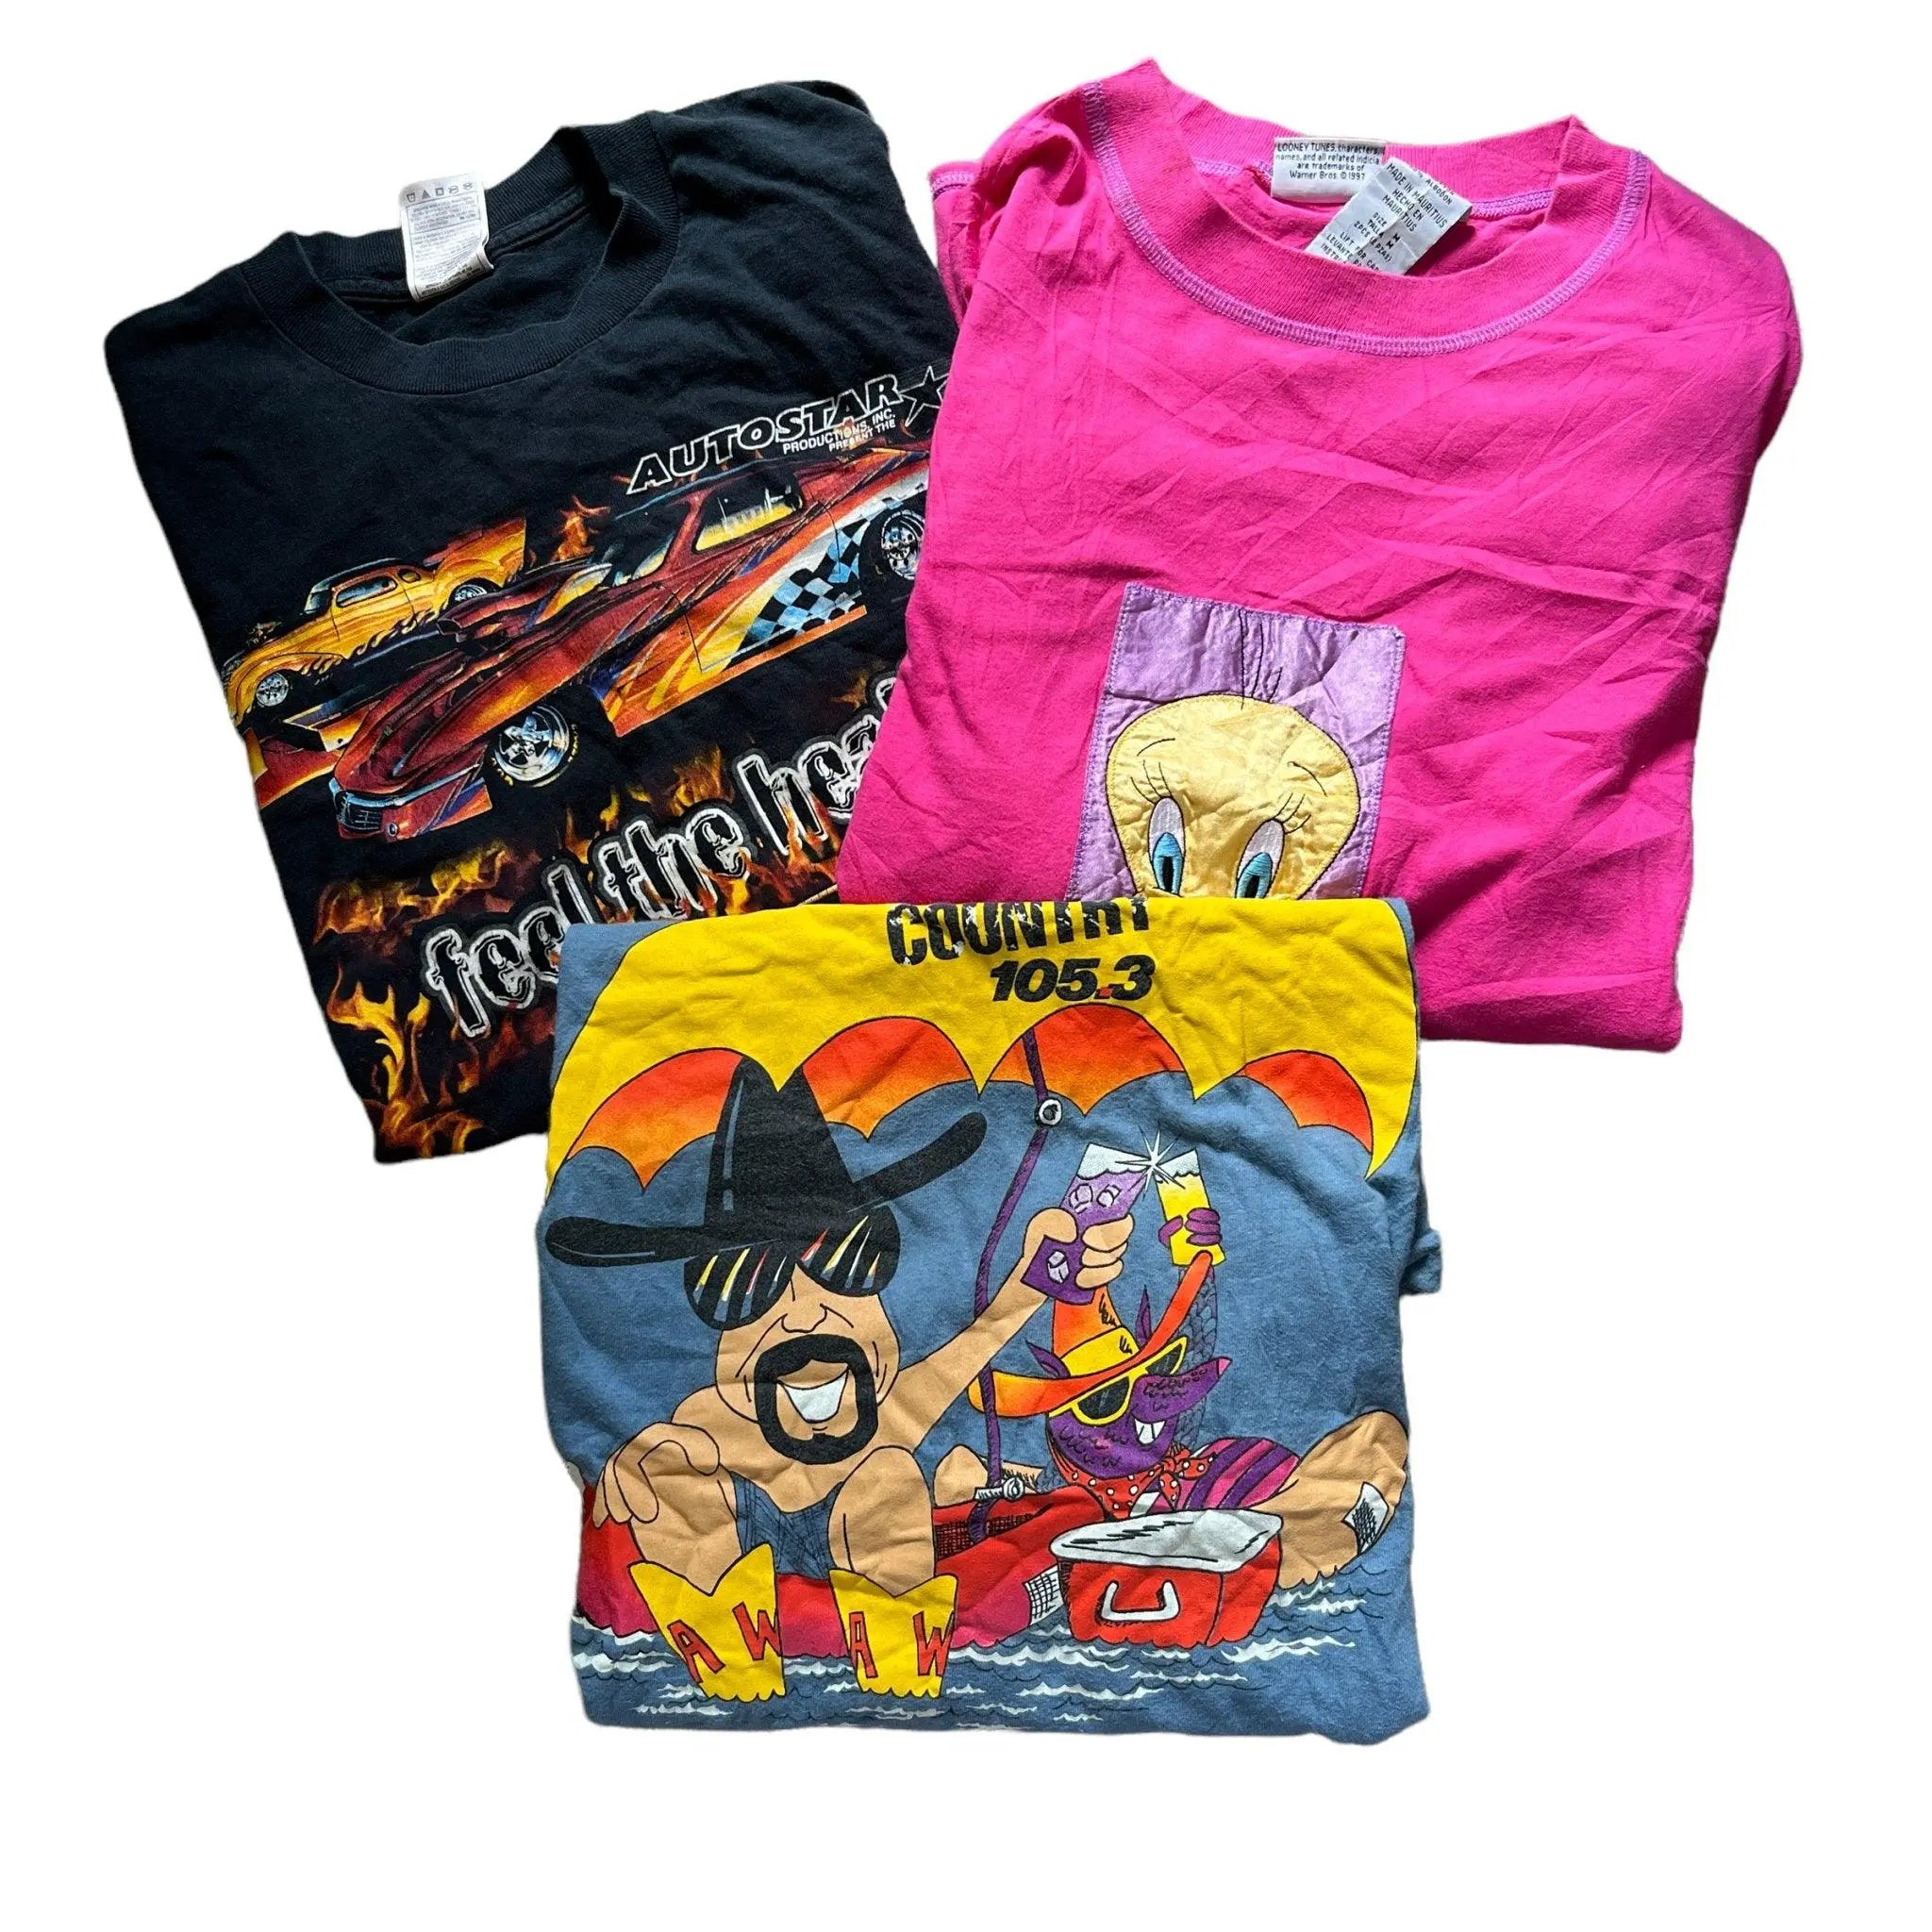 Wholesale Vintage Graphic T-Shirts Color - Visione Vintage